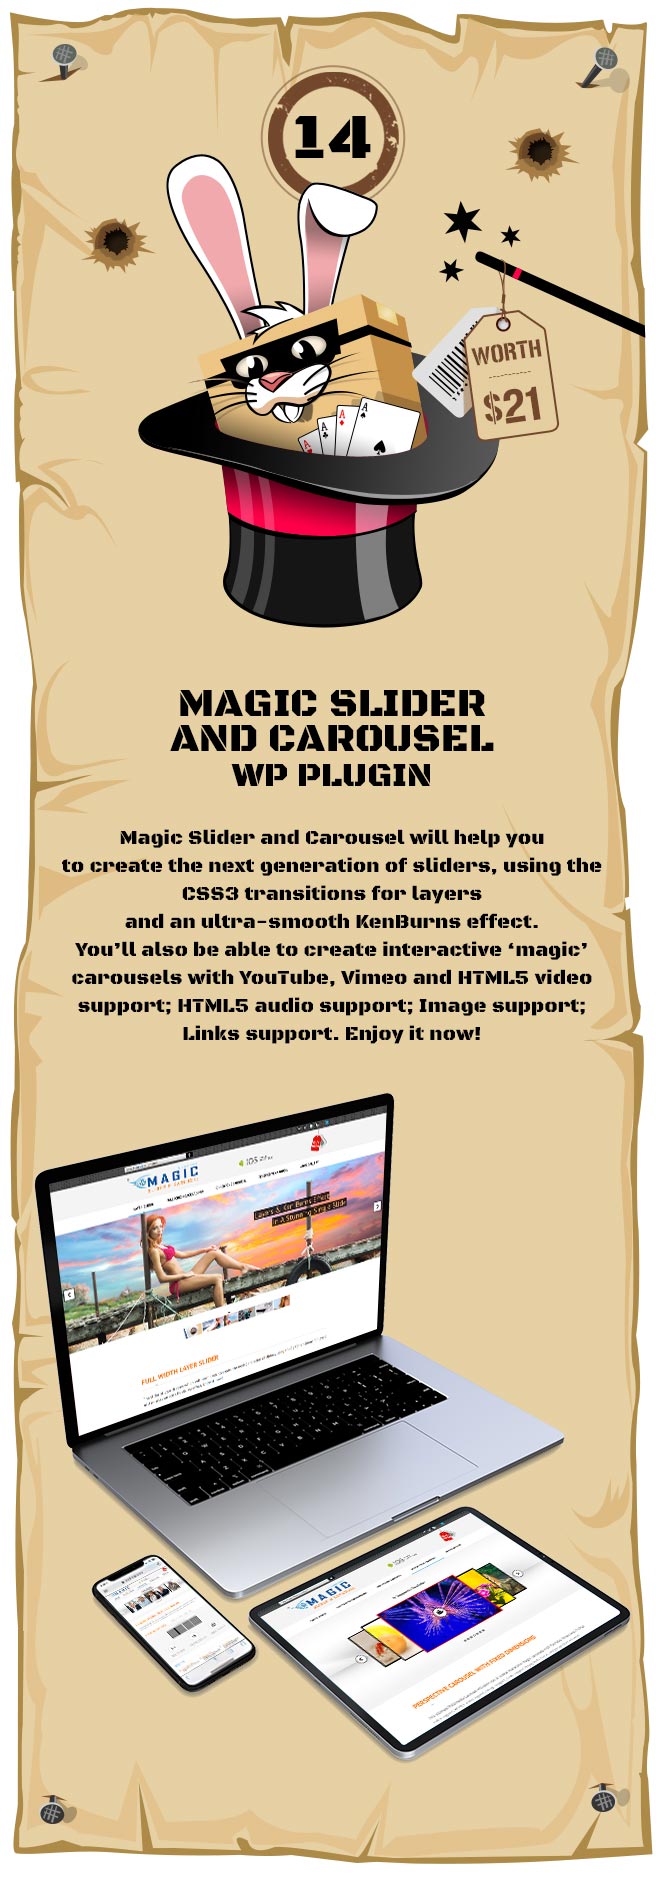 Magic Responsive Slider and Carousel WordPress Plugin